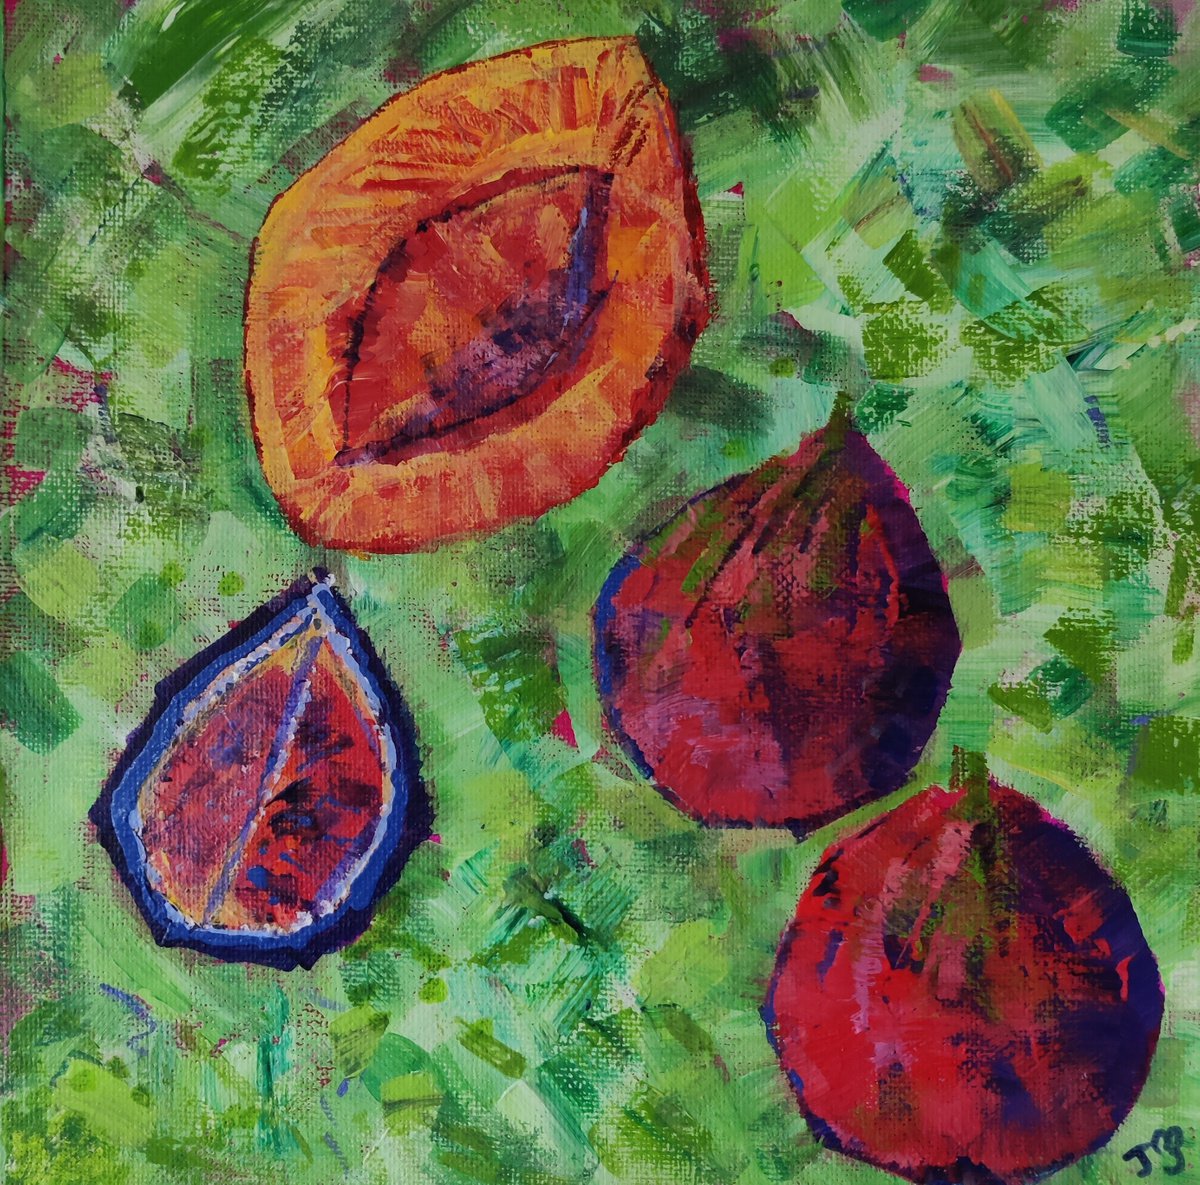 Figs and Apricot by Julia Preston